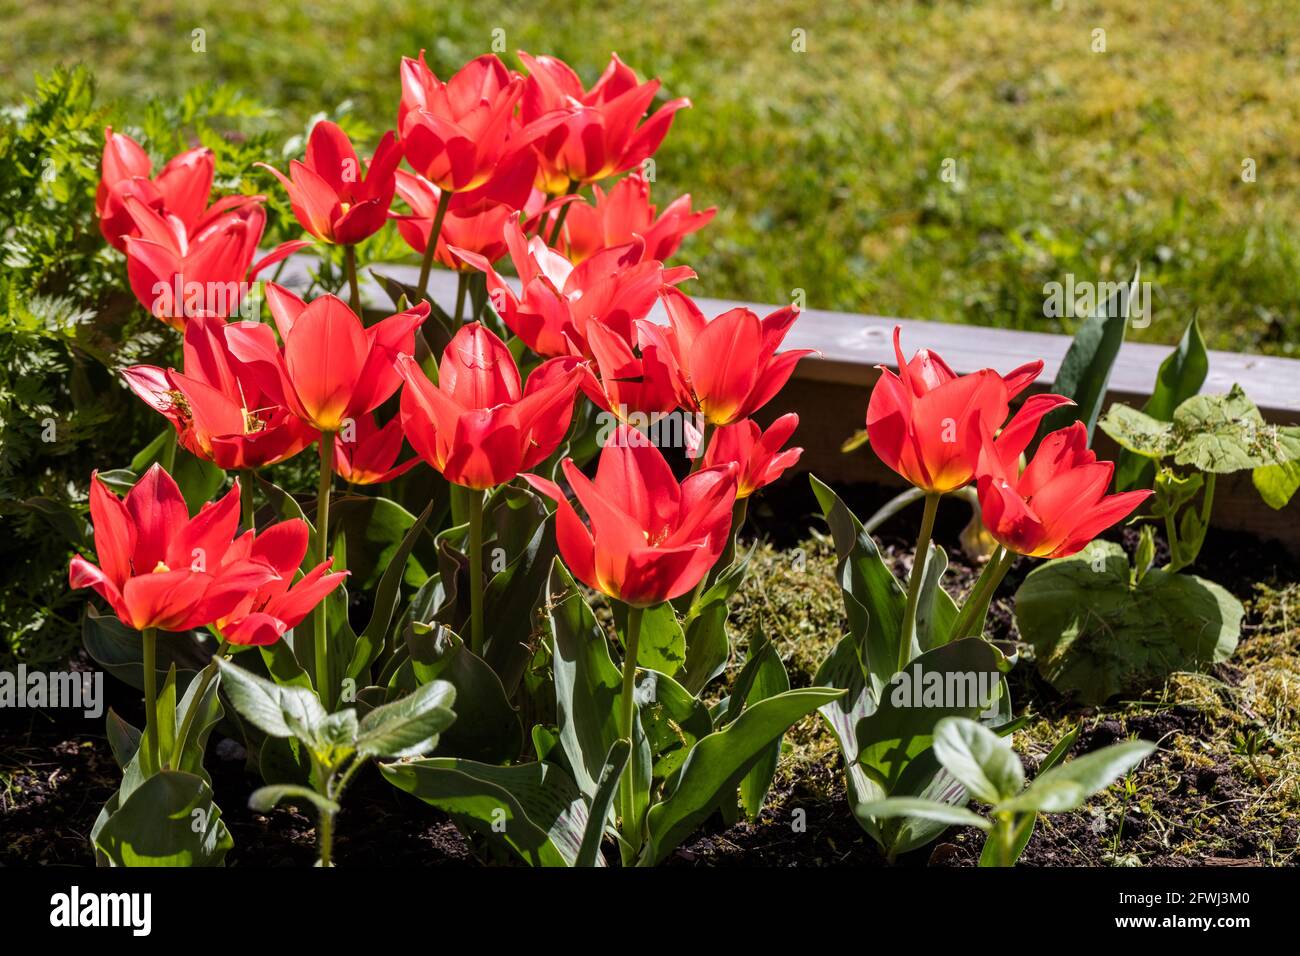 'Toronto' Greigii Tulip, Strimtulpan (Tulipa greigii) Stock Photo